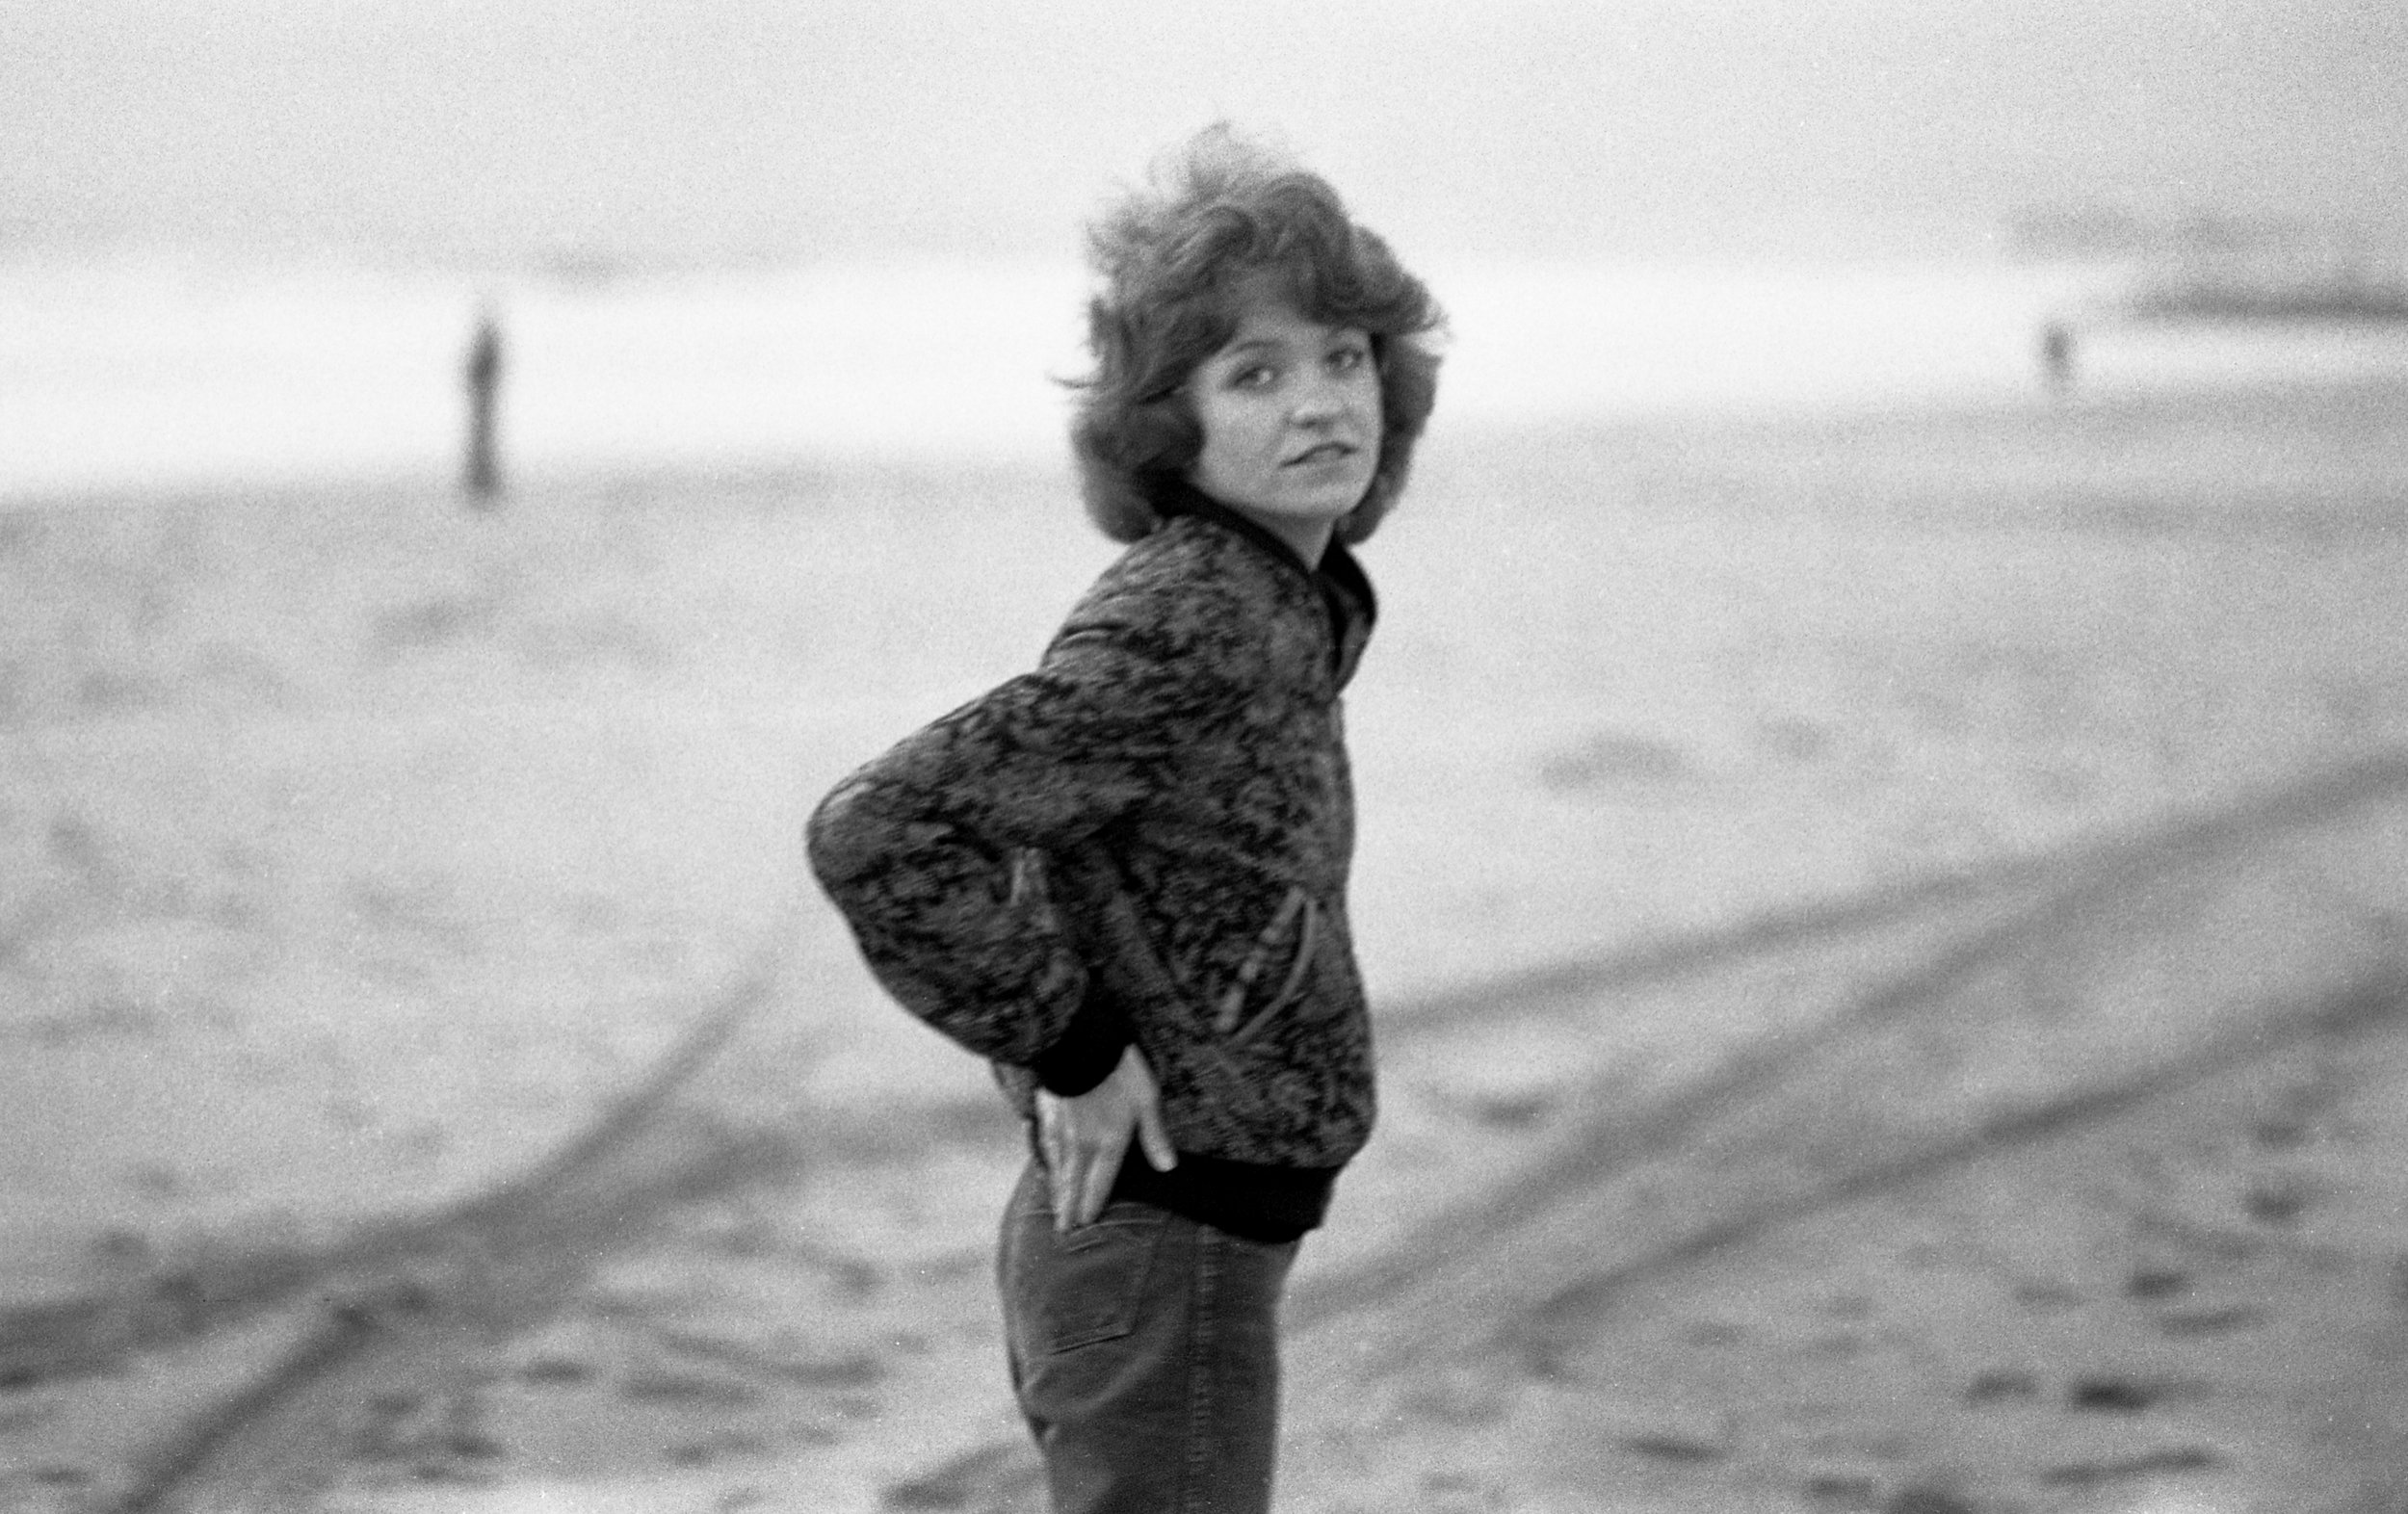 Marty, Venice Beach 1979